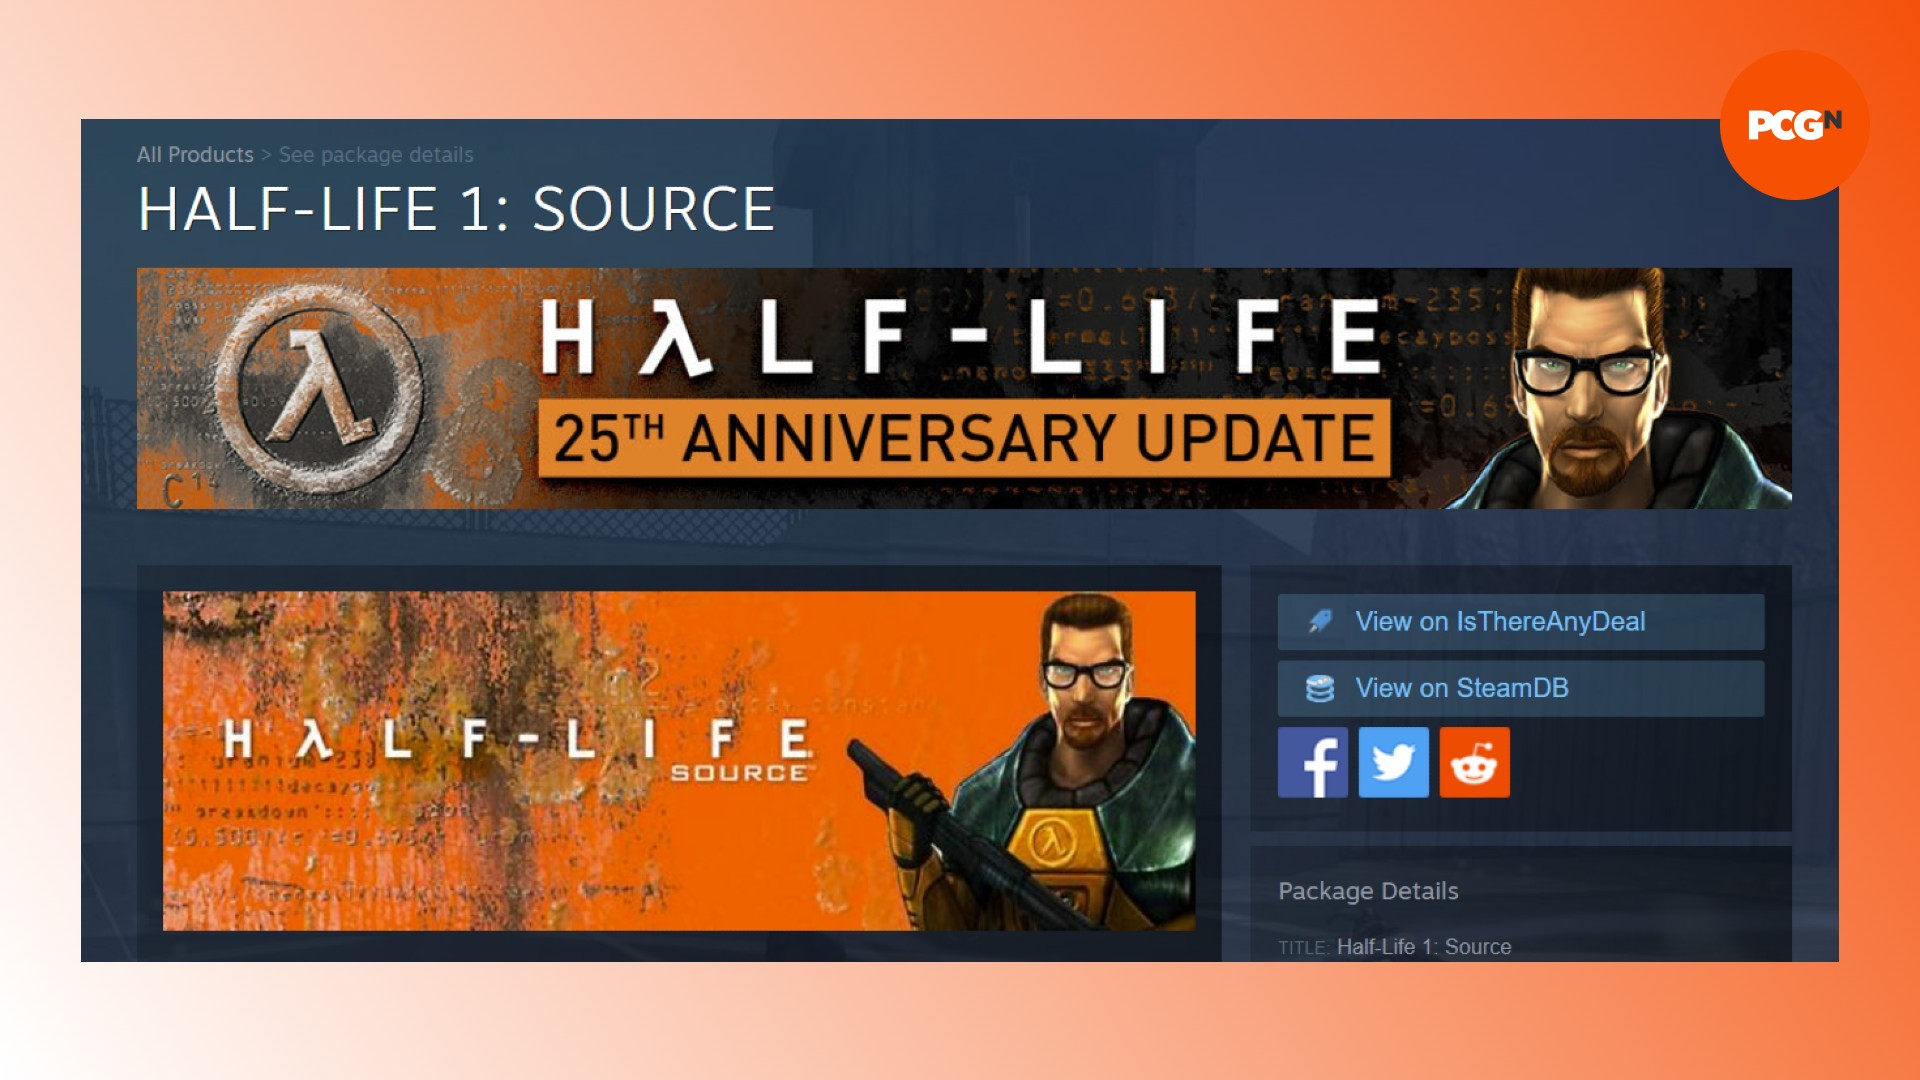 Half-Life Source Steam delistet: Eine Steam-Store-Seite für das FPS-Spiel Half-Life Source